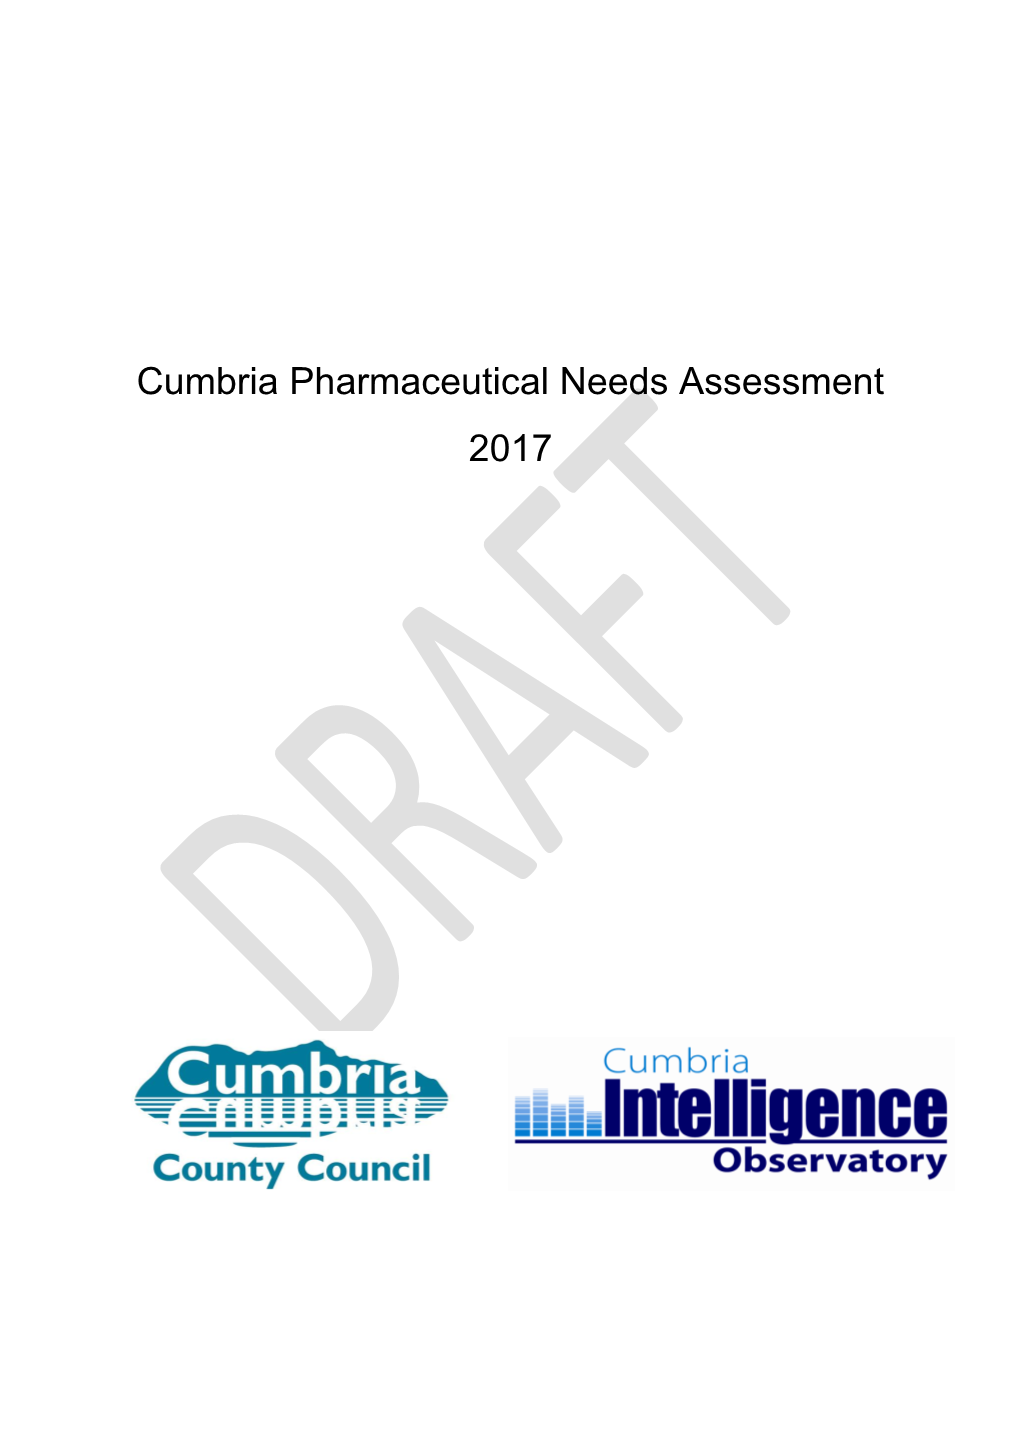 Cumbria Pharmaceutical Needs Assessment 2017